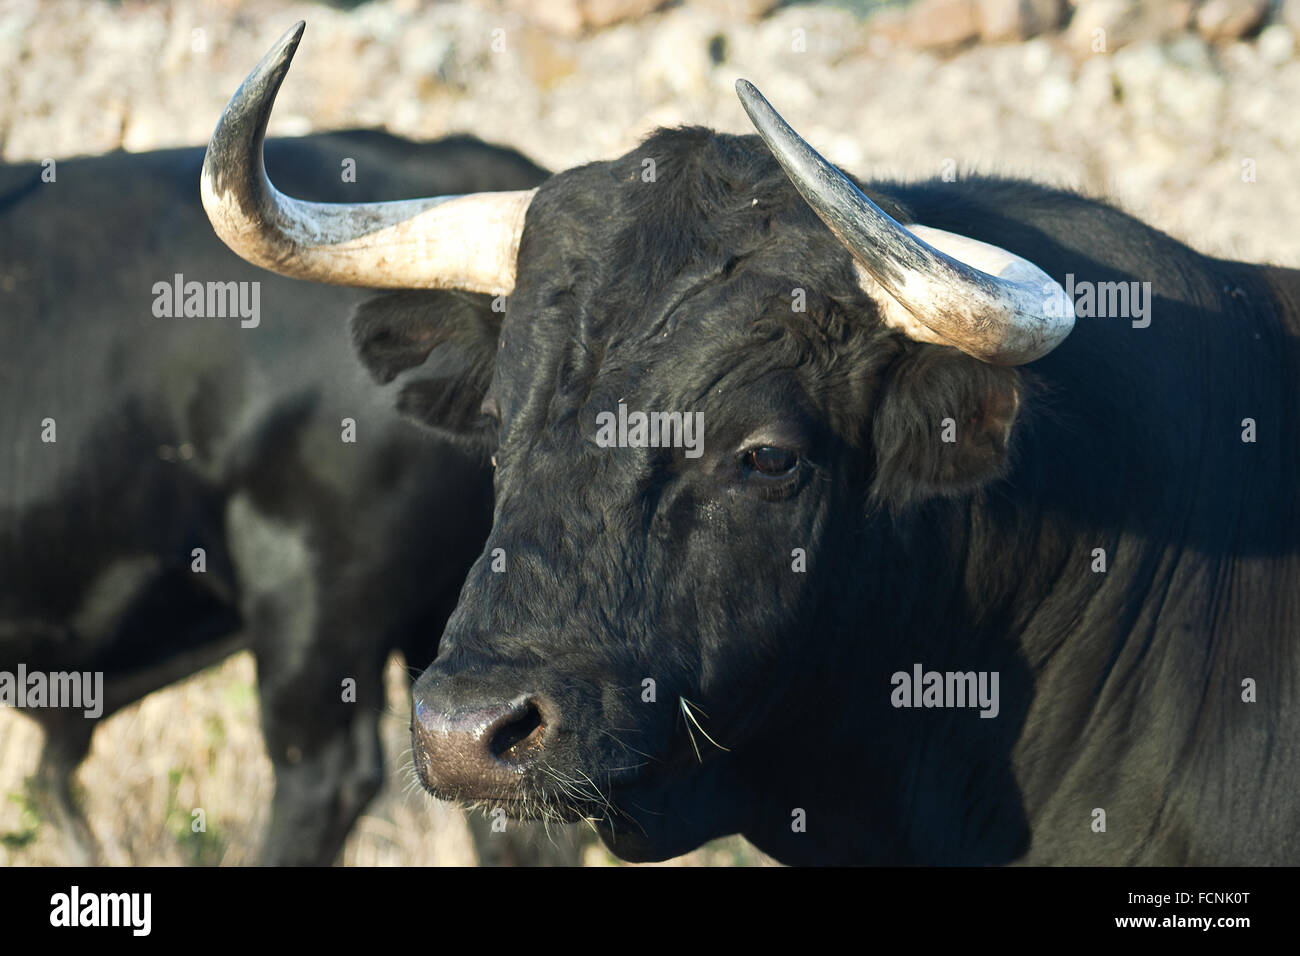 Exemplar der spanischen Freilandhaltung fighting Bull Rasse auf ausgedehnten Ländereien. Kampfstiere werden für eine bestimmte Kombination o ausgewählt. Stockfoto